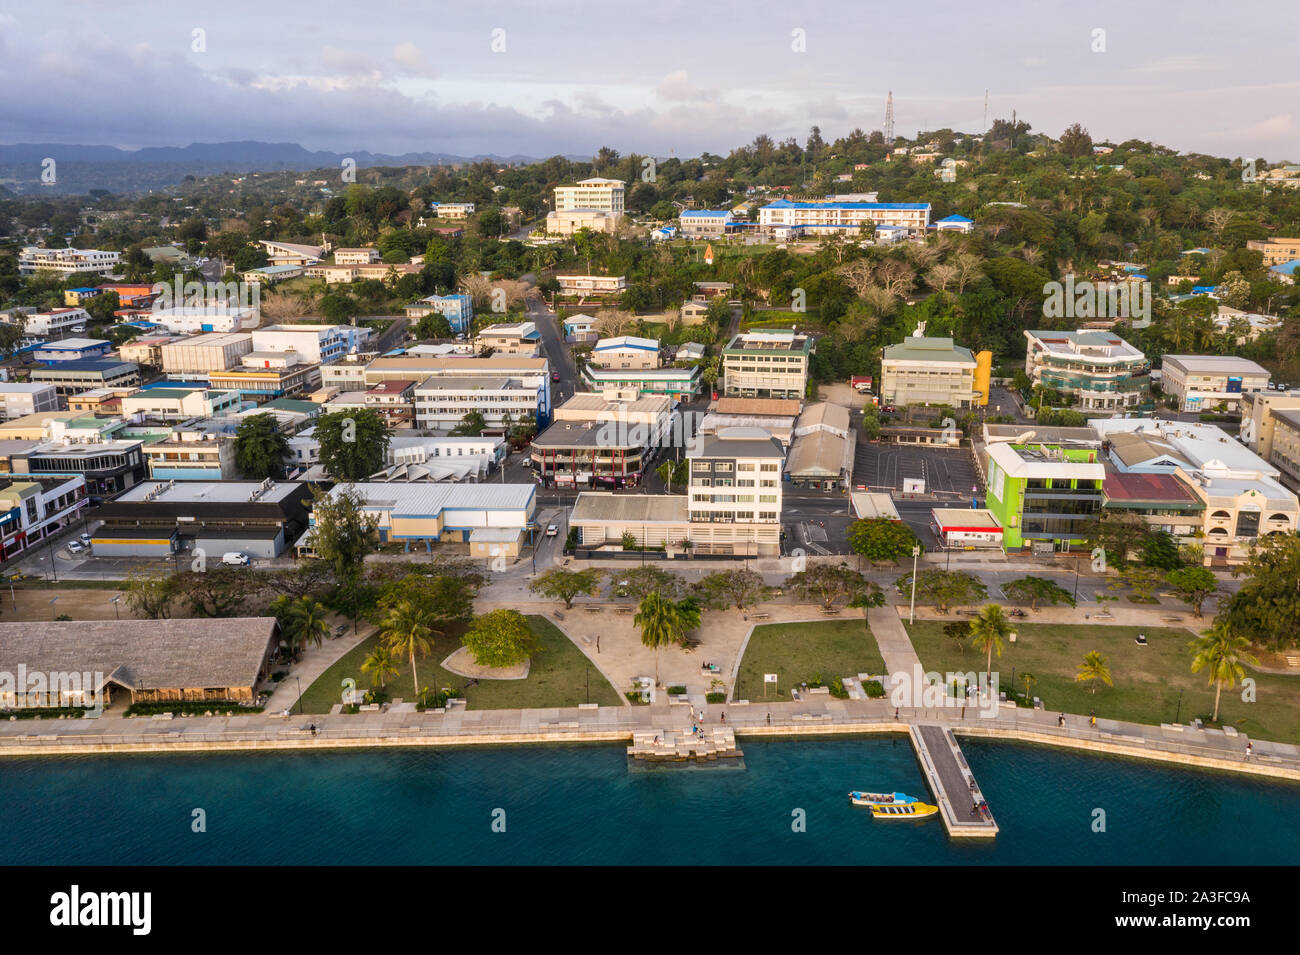 Vista aérea del centro de la ciudad de Port Vila con la costanera y el malecón parque público en la ciudad capital de Vanuatu en el Pacífico. Foto de stock